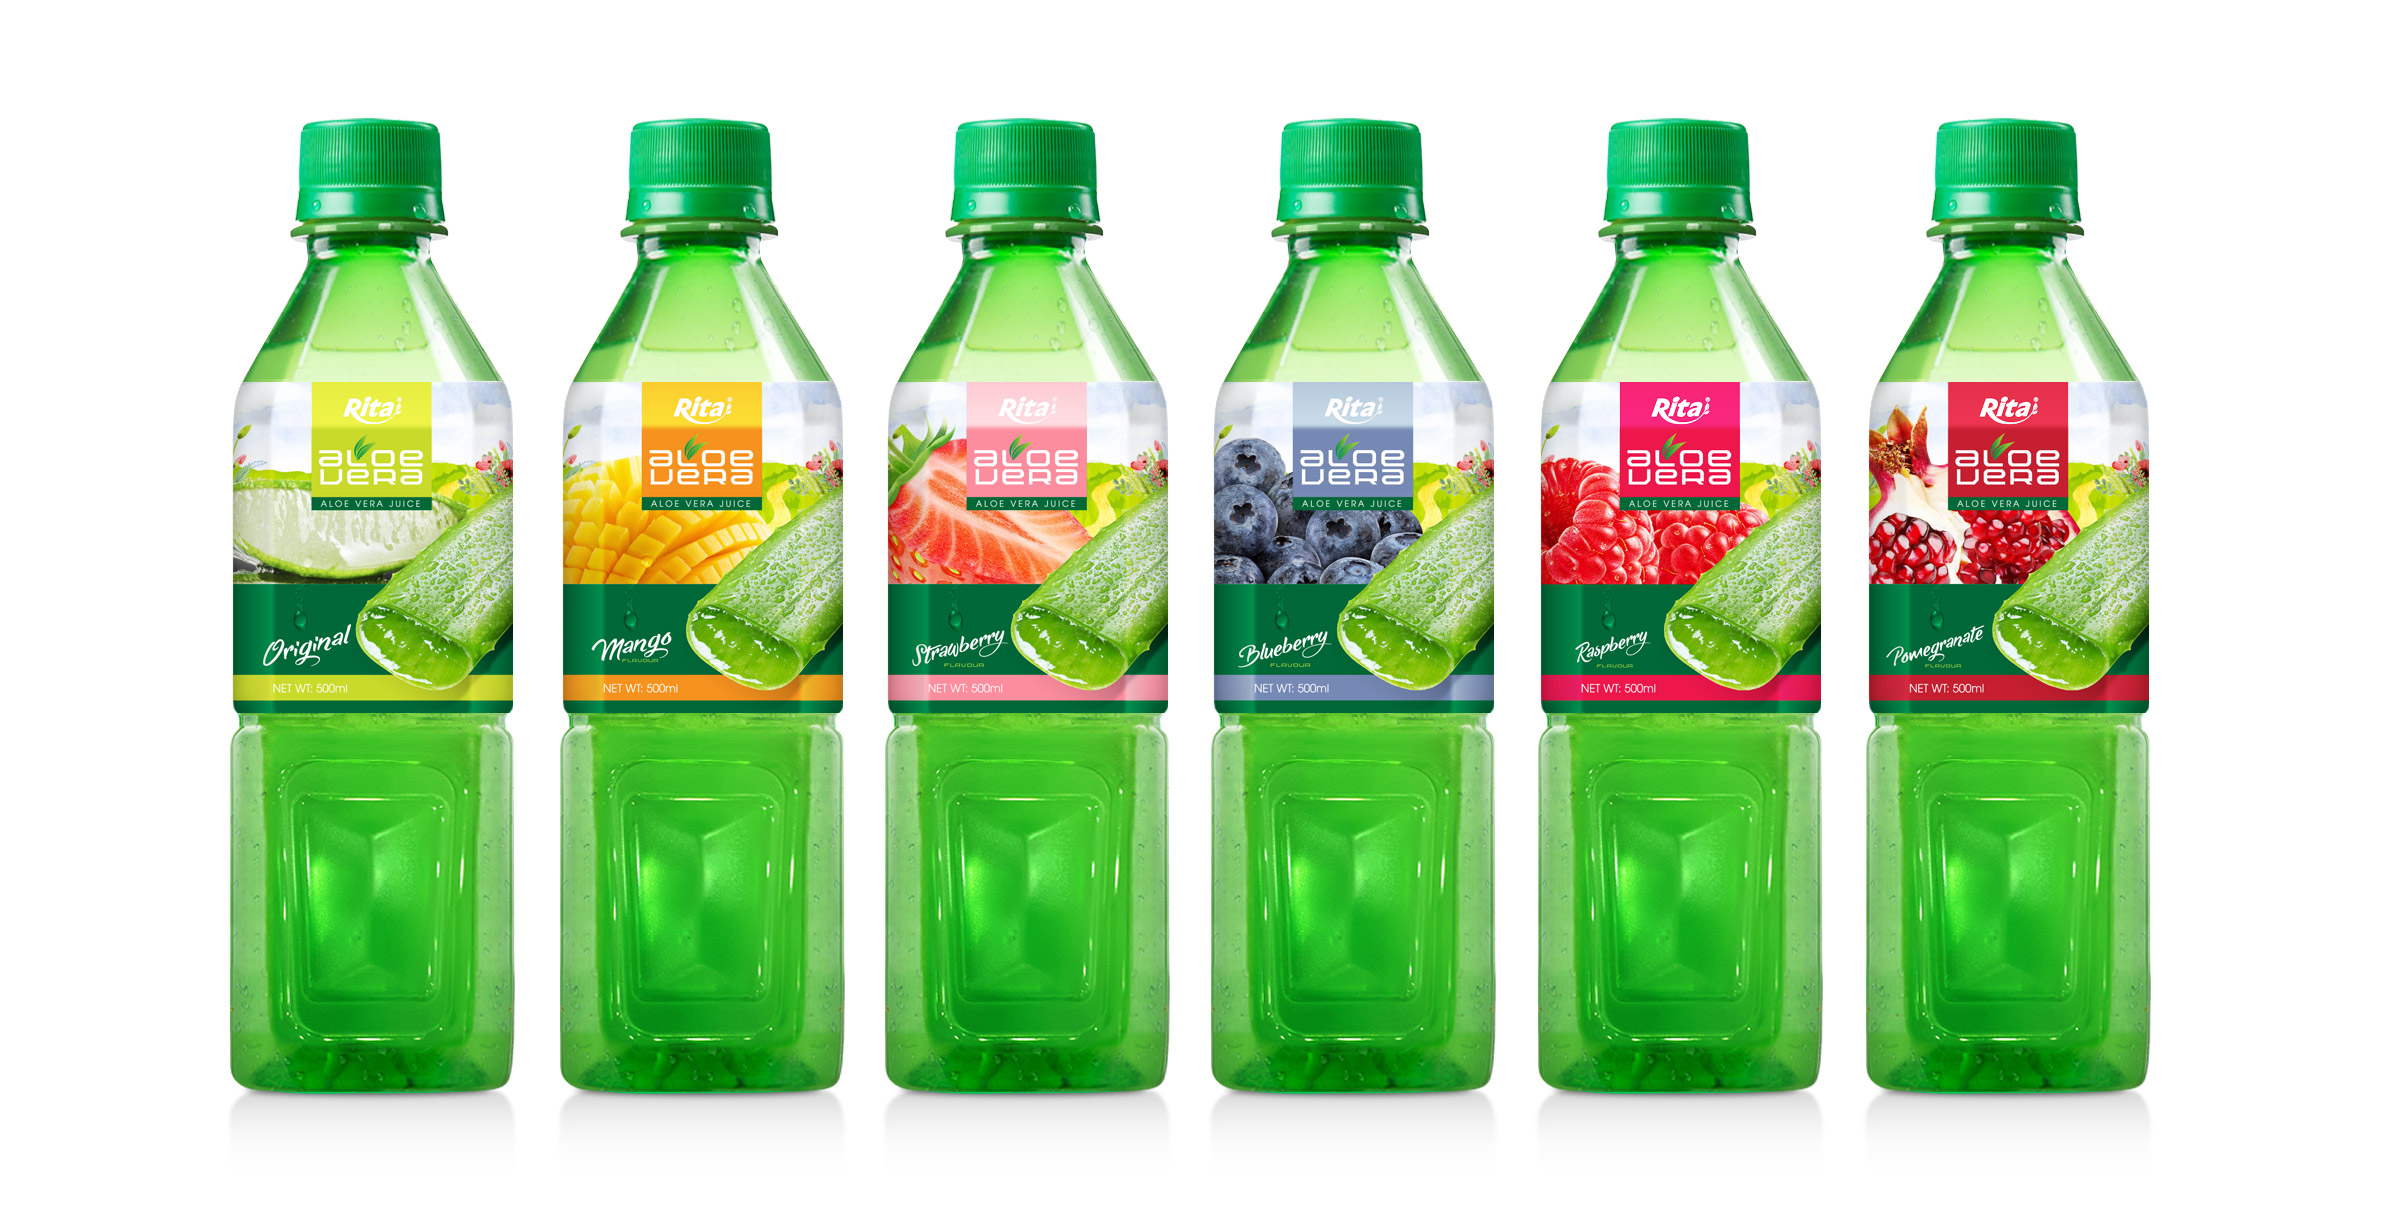 Series aloe 500ml Green Bottle